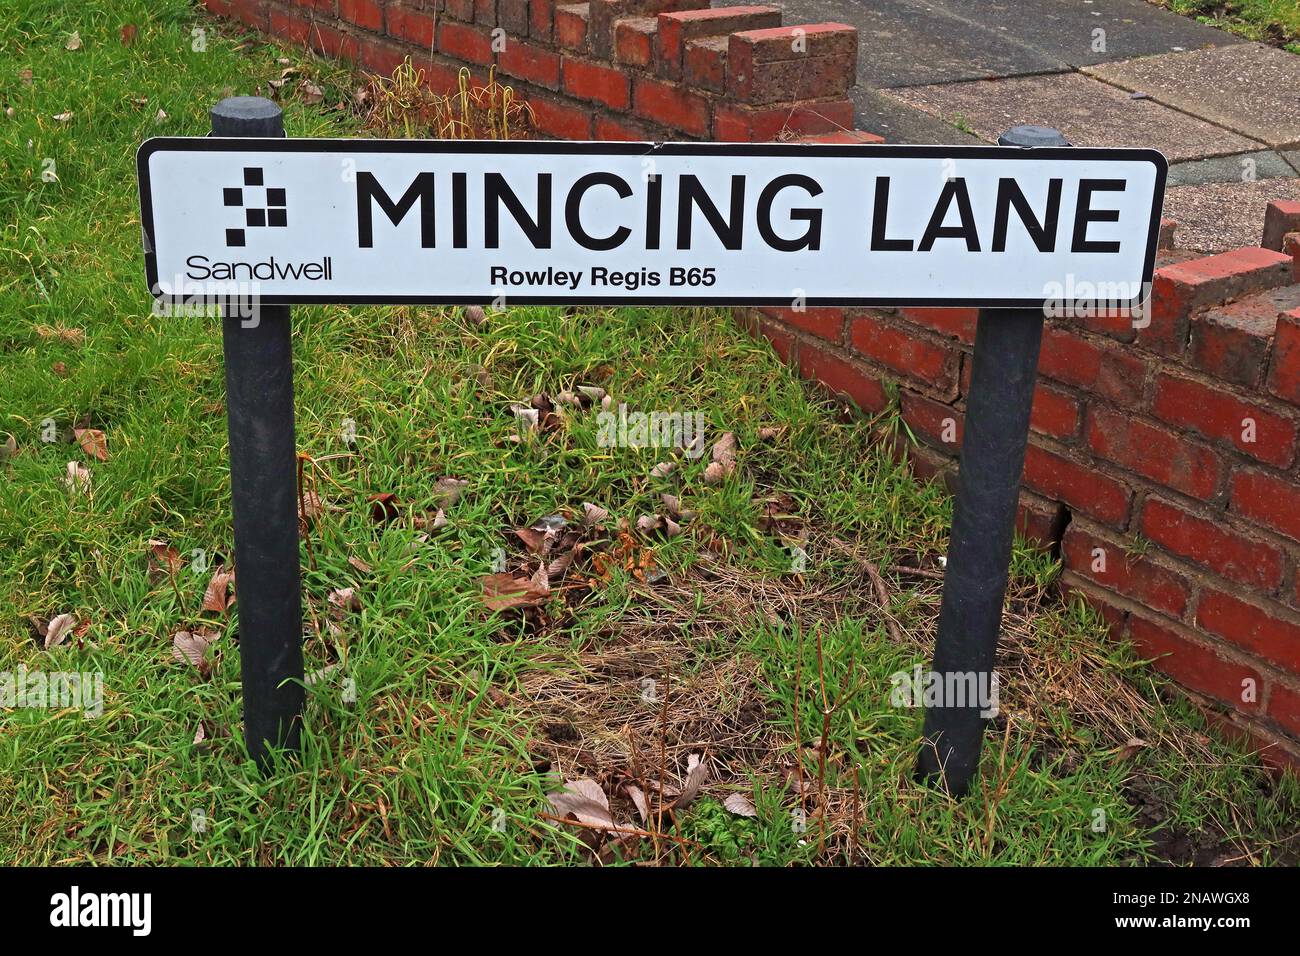 Mincing Lane, panneau routier, Rowley Village, Rowley Regis, Sandwell, West Midlands, Angleterre, Royaume-Uni, B65 9LX Banque D'Images